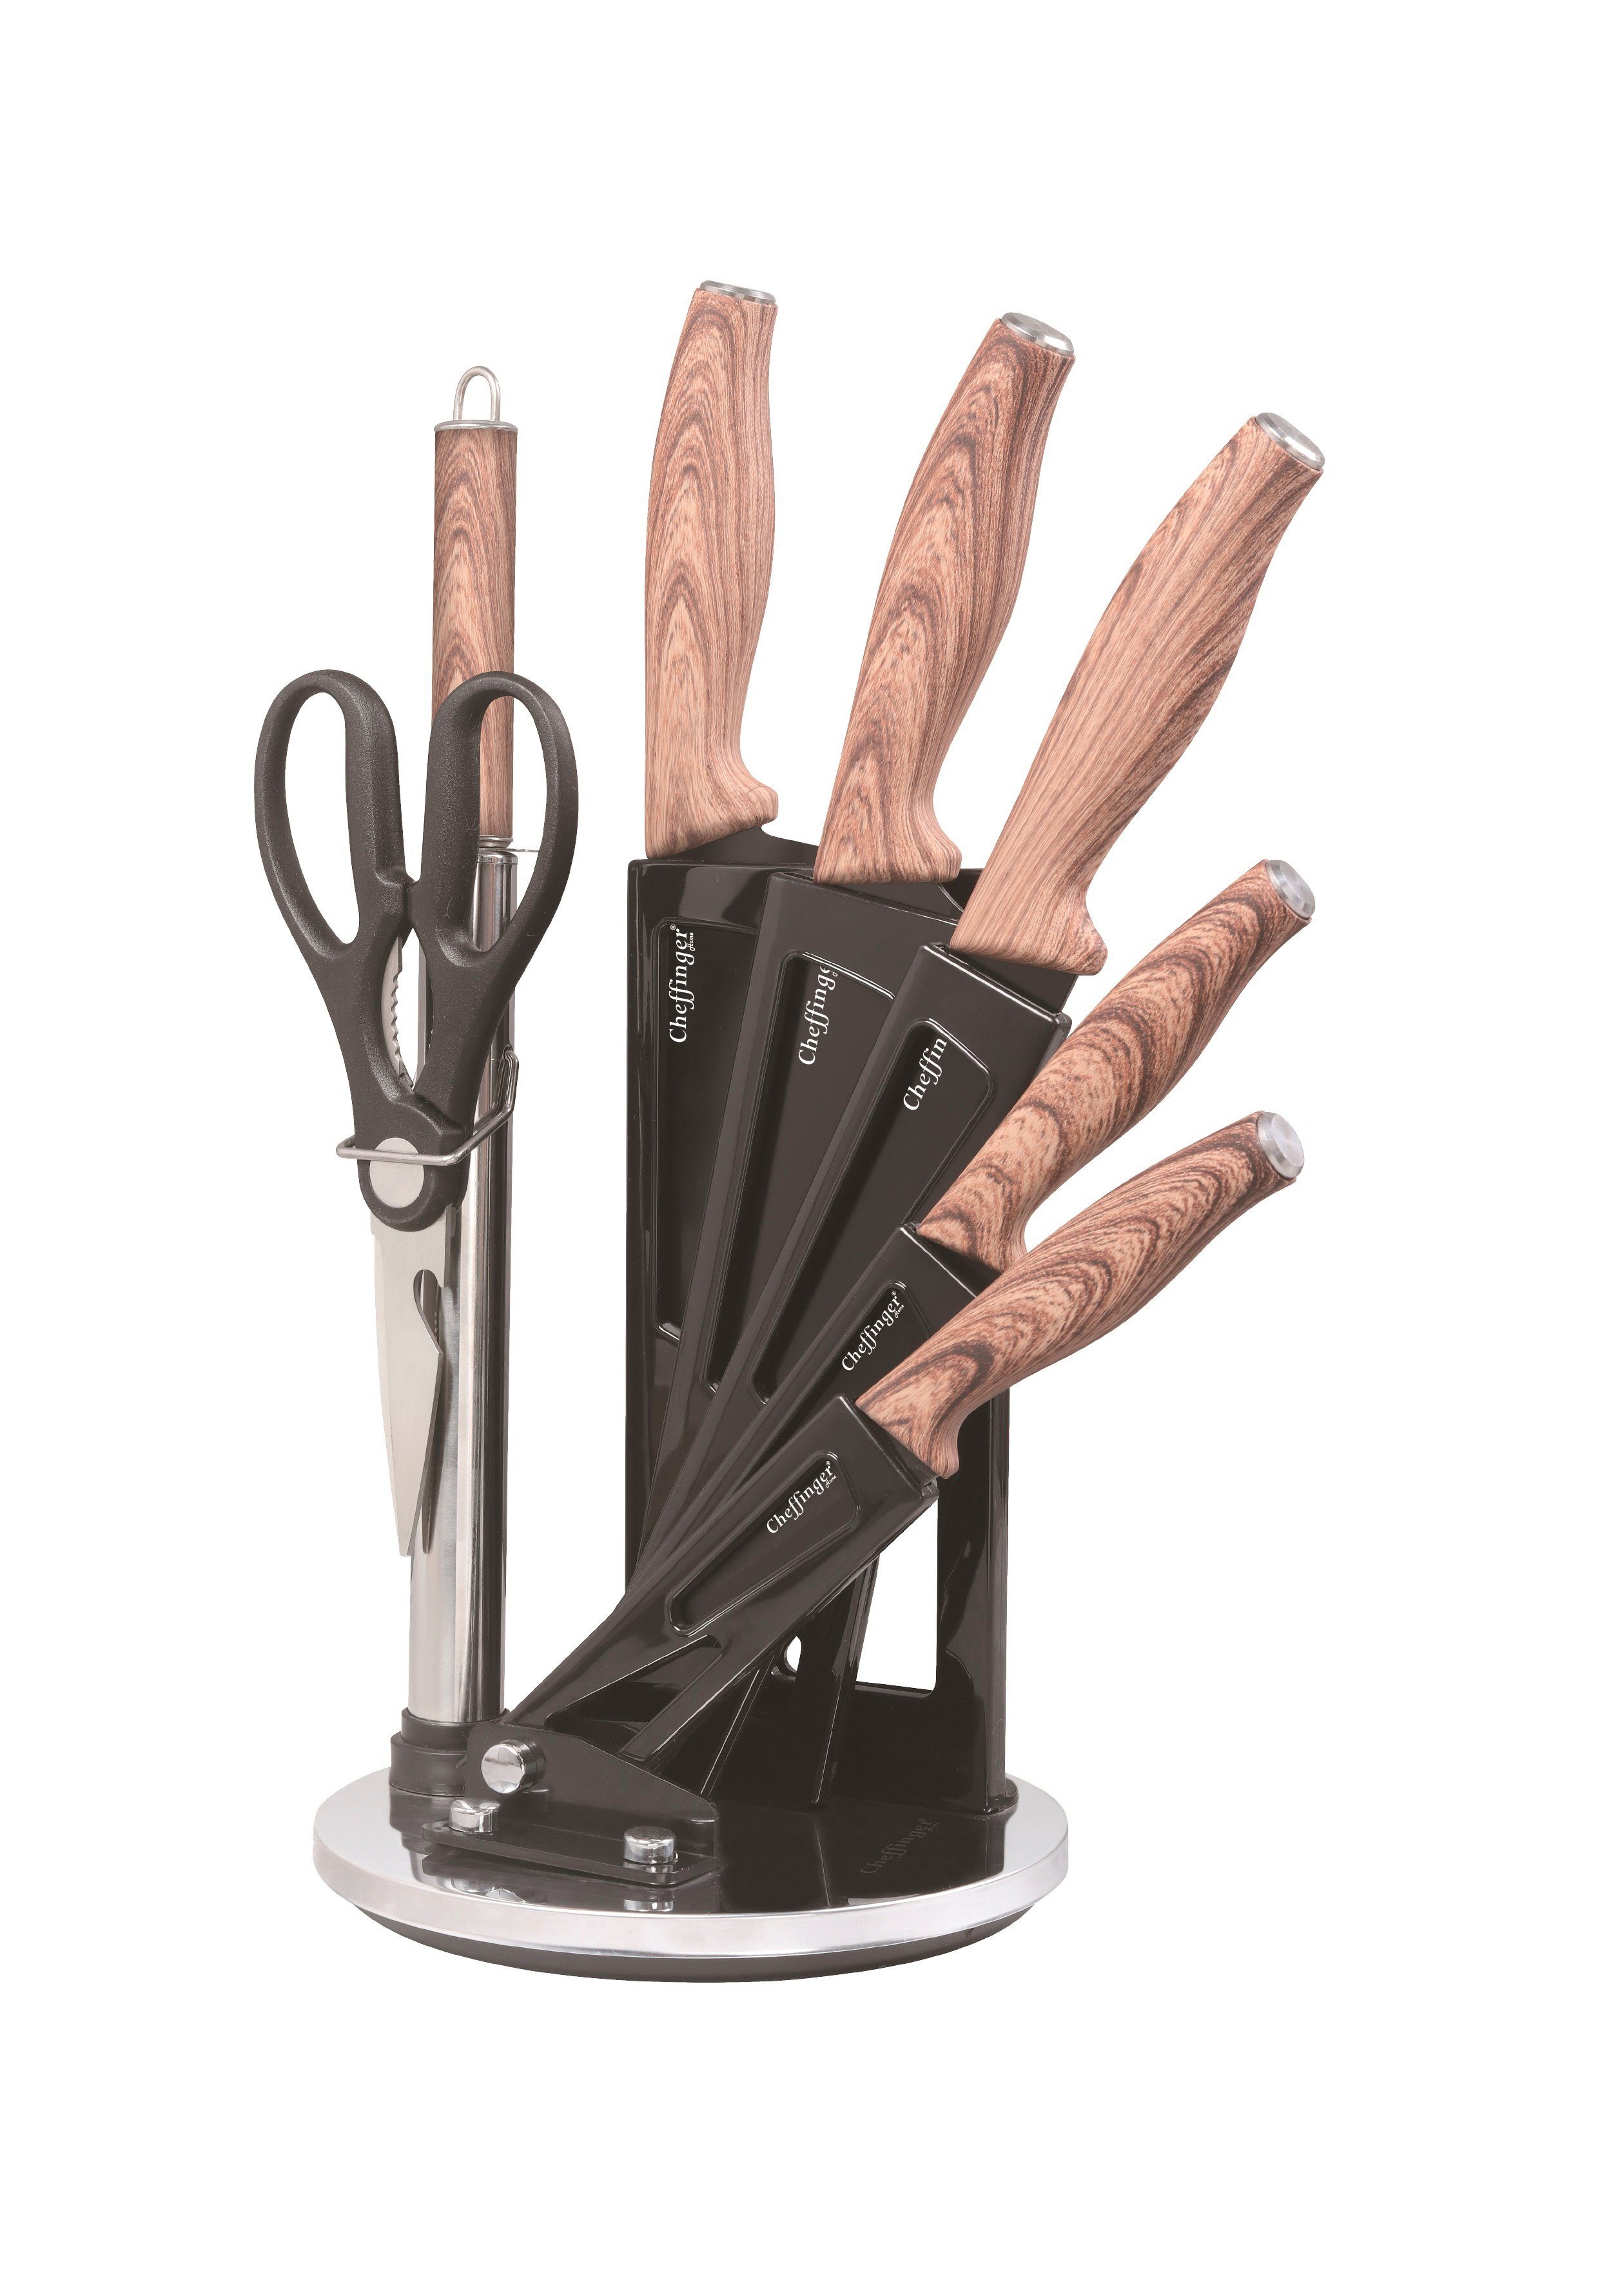 Cheffinger Messer-Set 8 tlg. Messerset Kochmesser Messerständer drehbar Messer Messerblock (8-tlg)